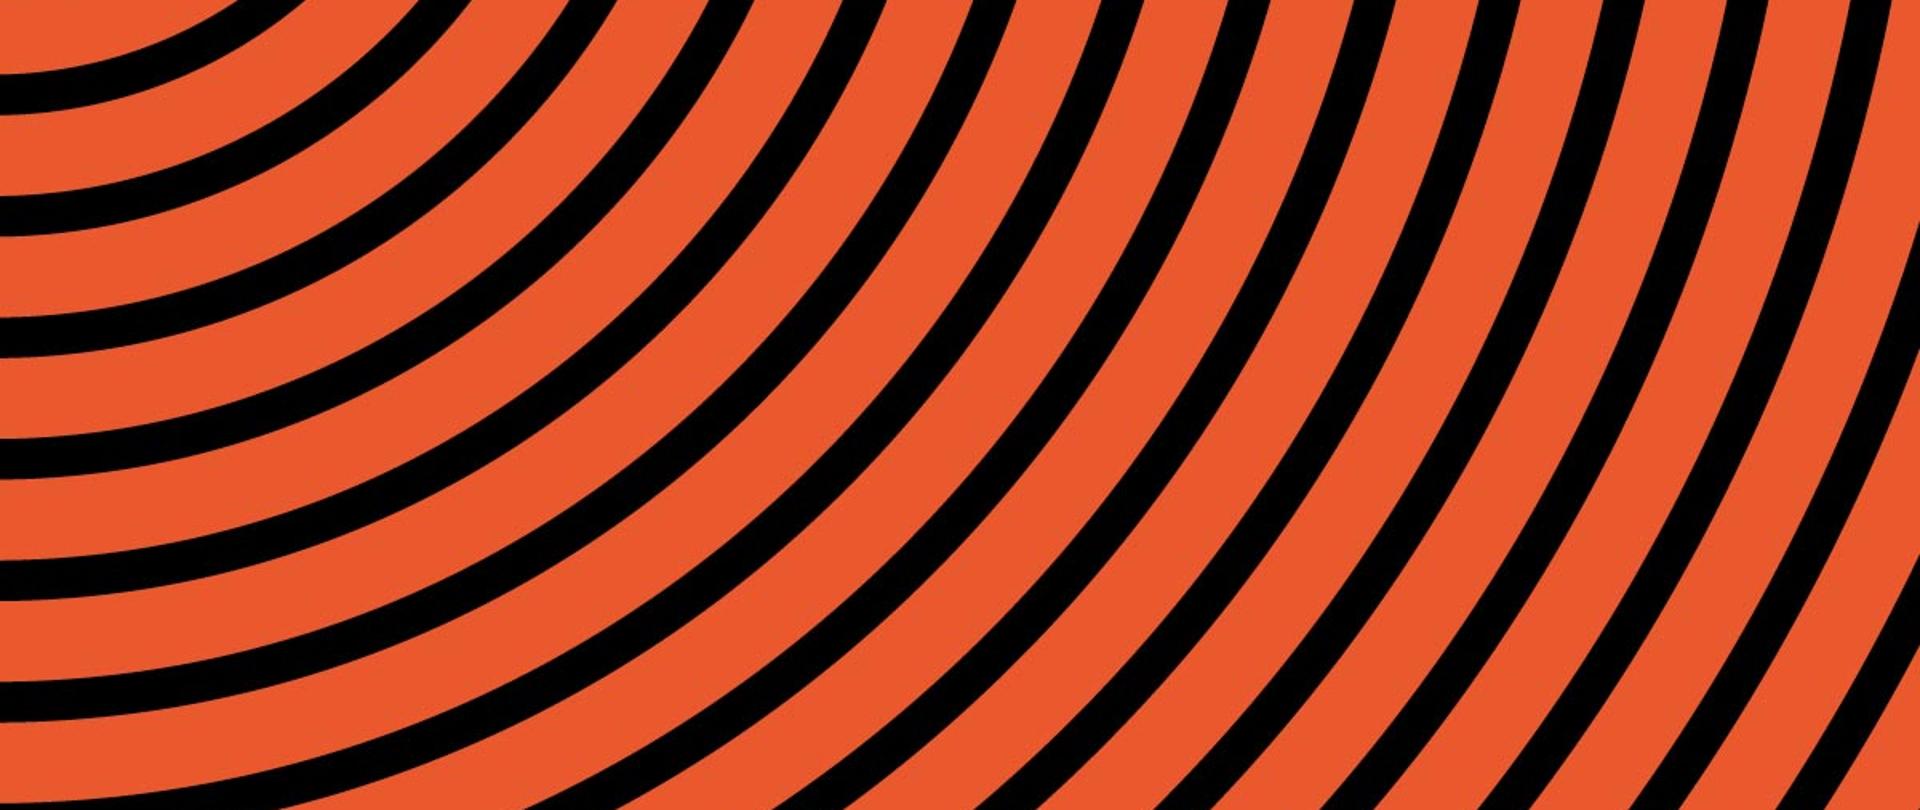 Grafika przedstawiająca czarne zaokrąglone pasy imitujące fale rozchodzące się od lewego górnego narożnika na pomarańczowym tle.